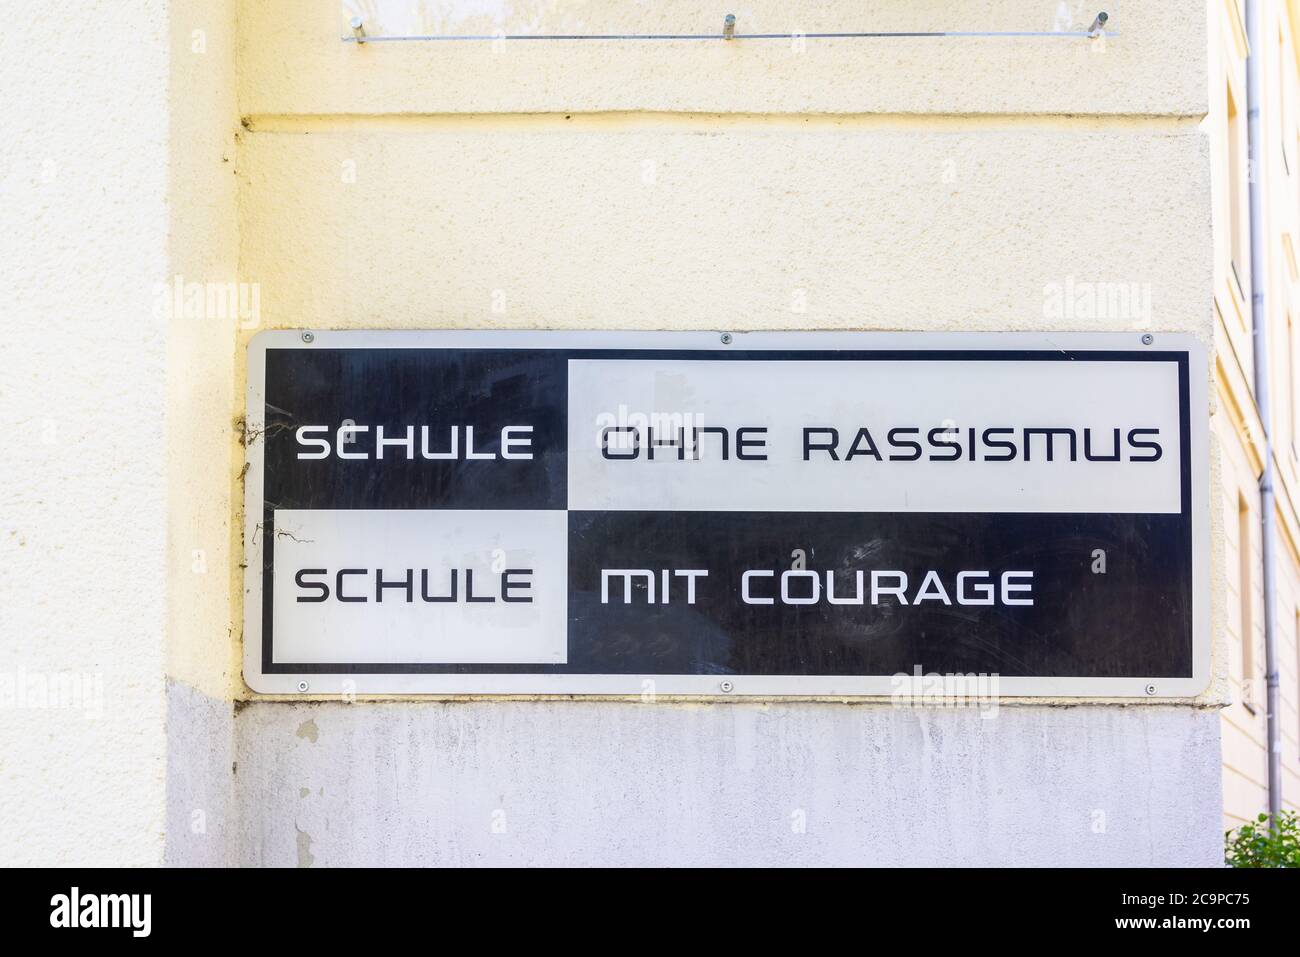 Schule ohne Rassismus, Schule mit Courage Schild - scuola senza razzismo, scuola con segno di coraggio fuori da un collegio tedesco a Berlino, Germania, Europa Foto Stock